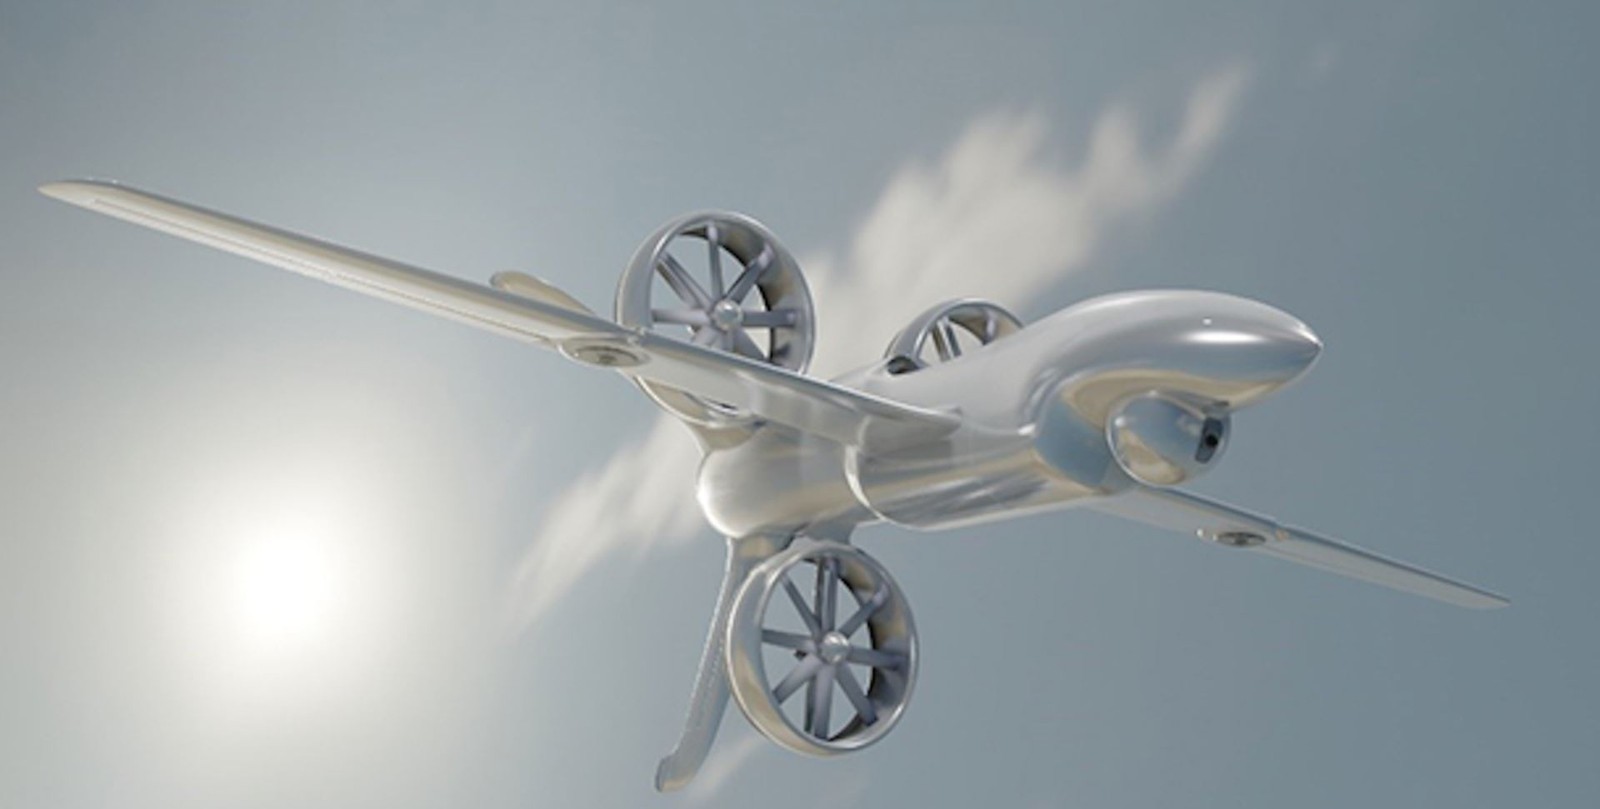 X-Plane to przyszłość amerykańskiego lotnictwa. Na czym polega rewolucja od DARPA?